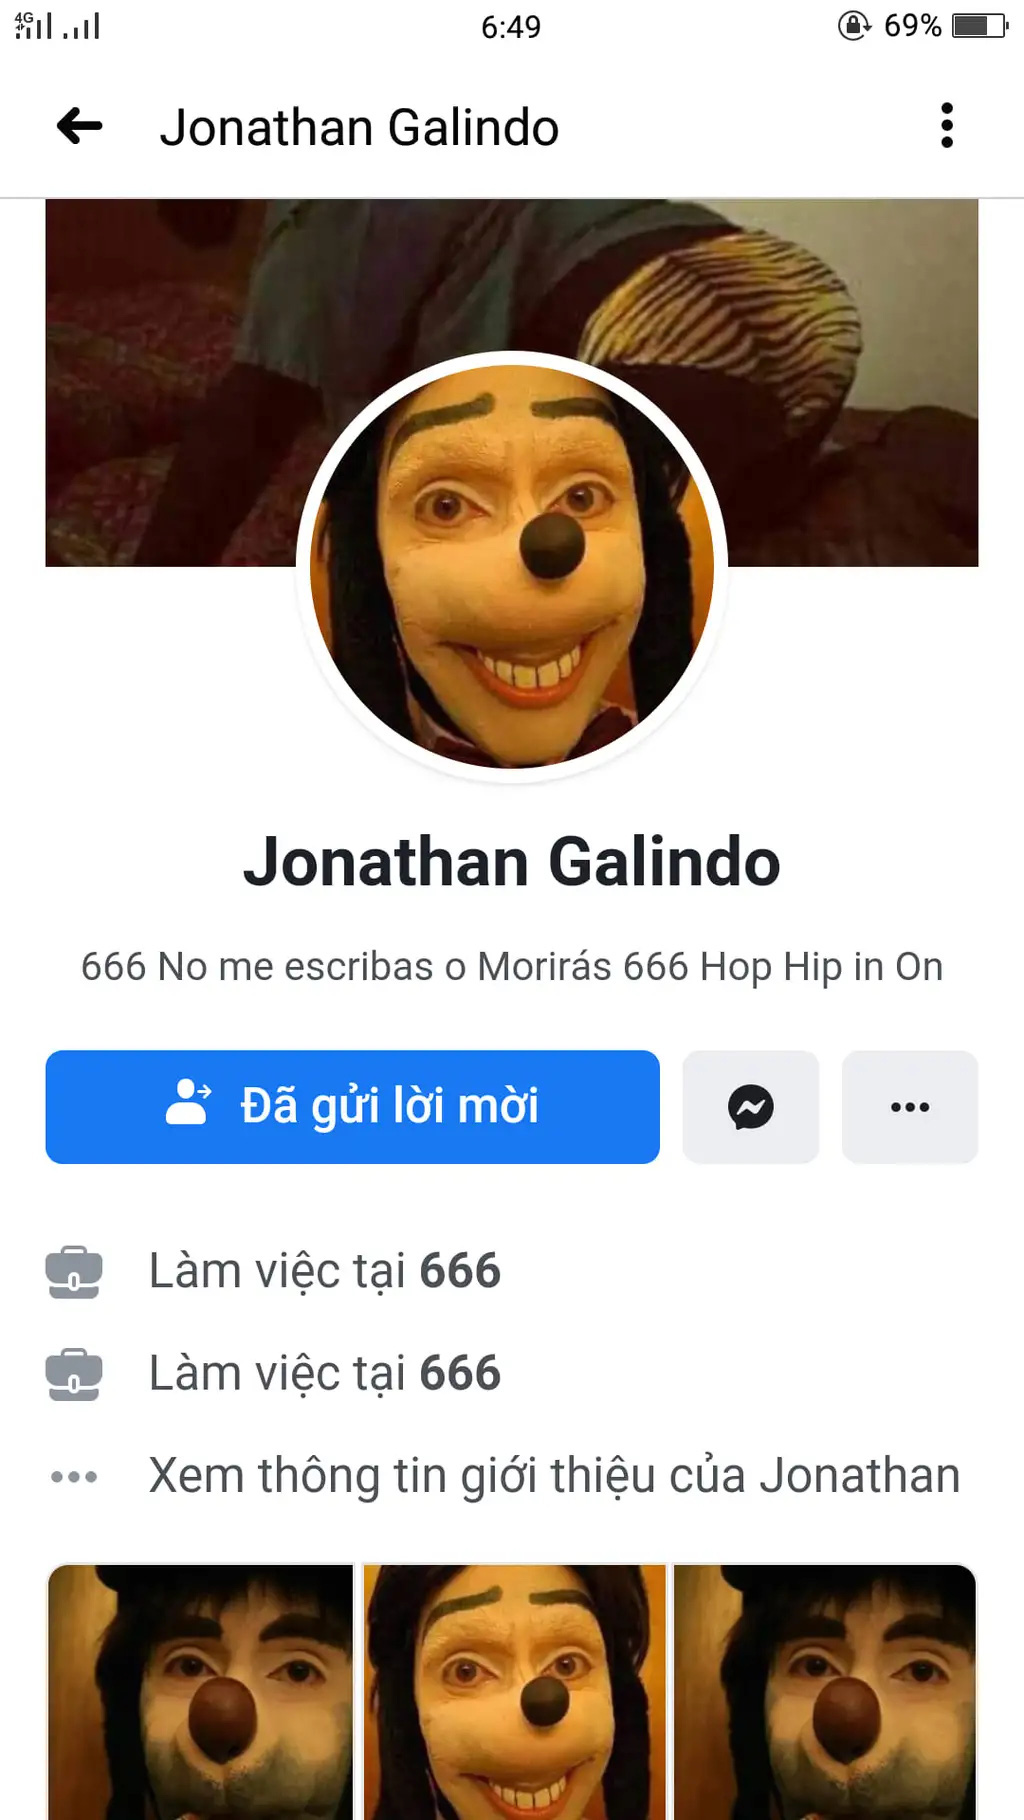 Ngập tràn meme và spam tài khoản chỉ trong 24h, netizen Việt tuyên bố: Jonathan Galindo rất đáng sợ, nhưng rất tiếc là không phải ở Đông Lào - Ảnh 1.